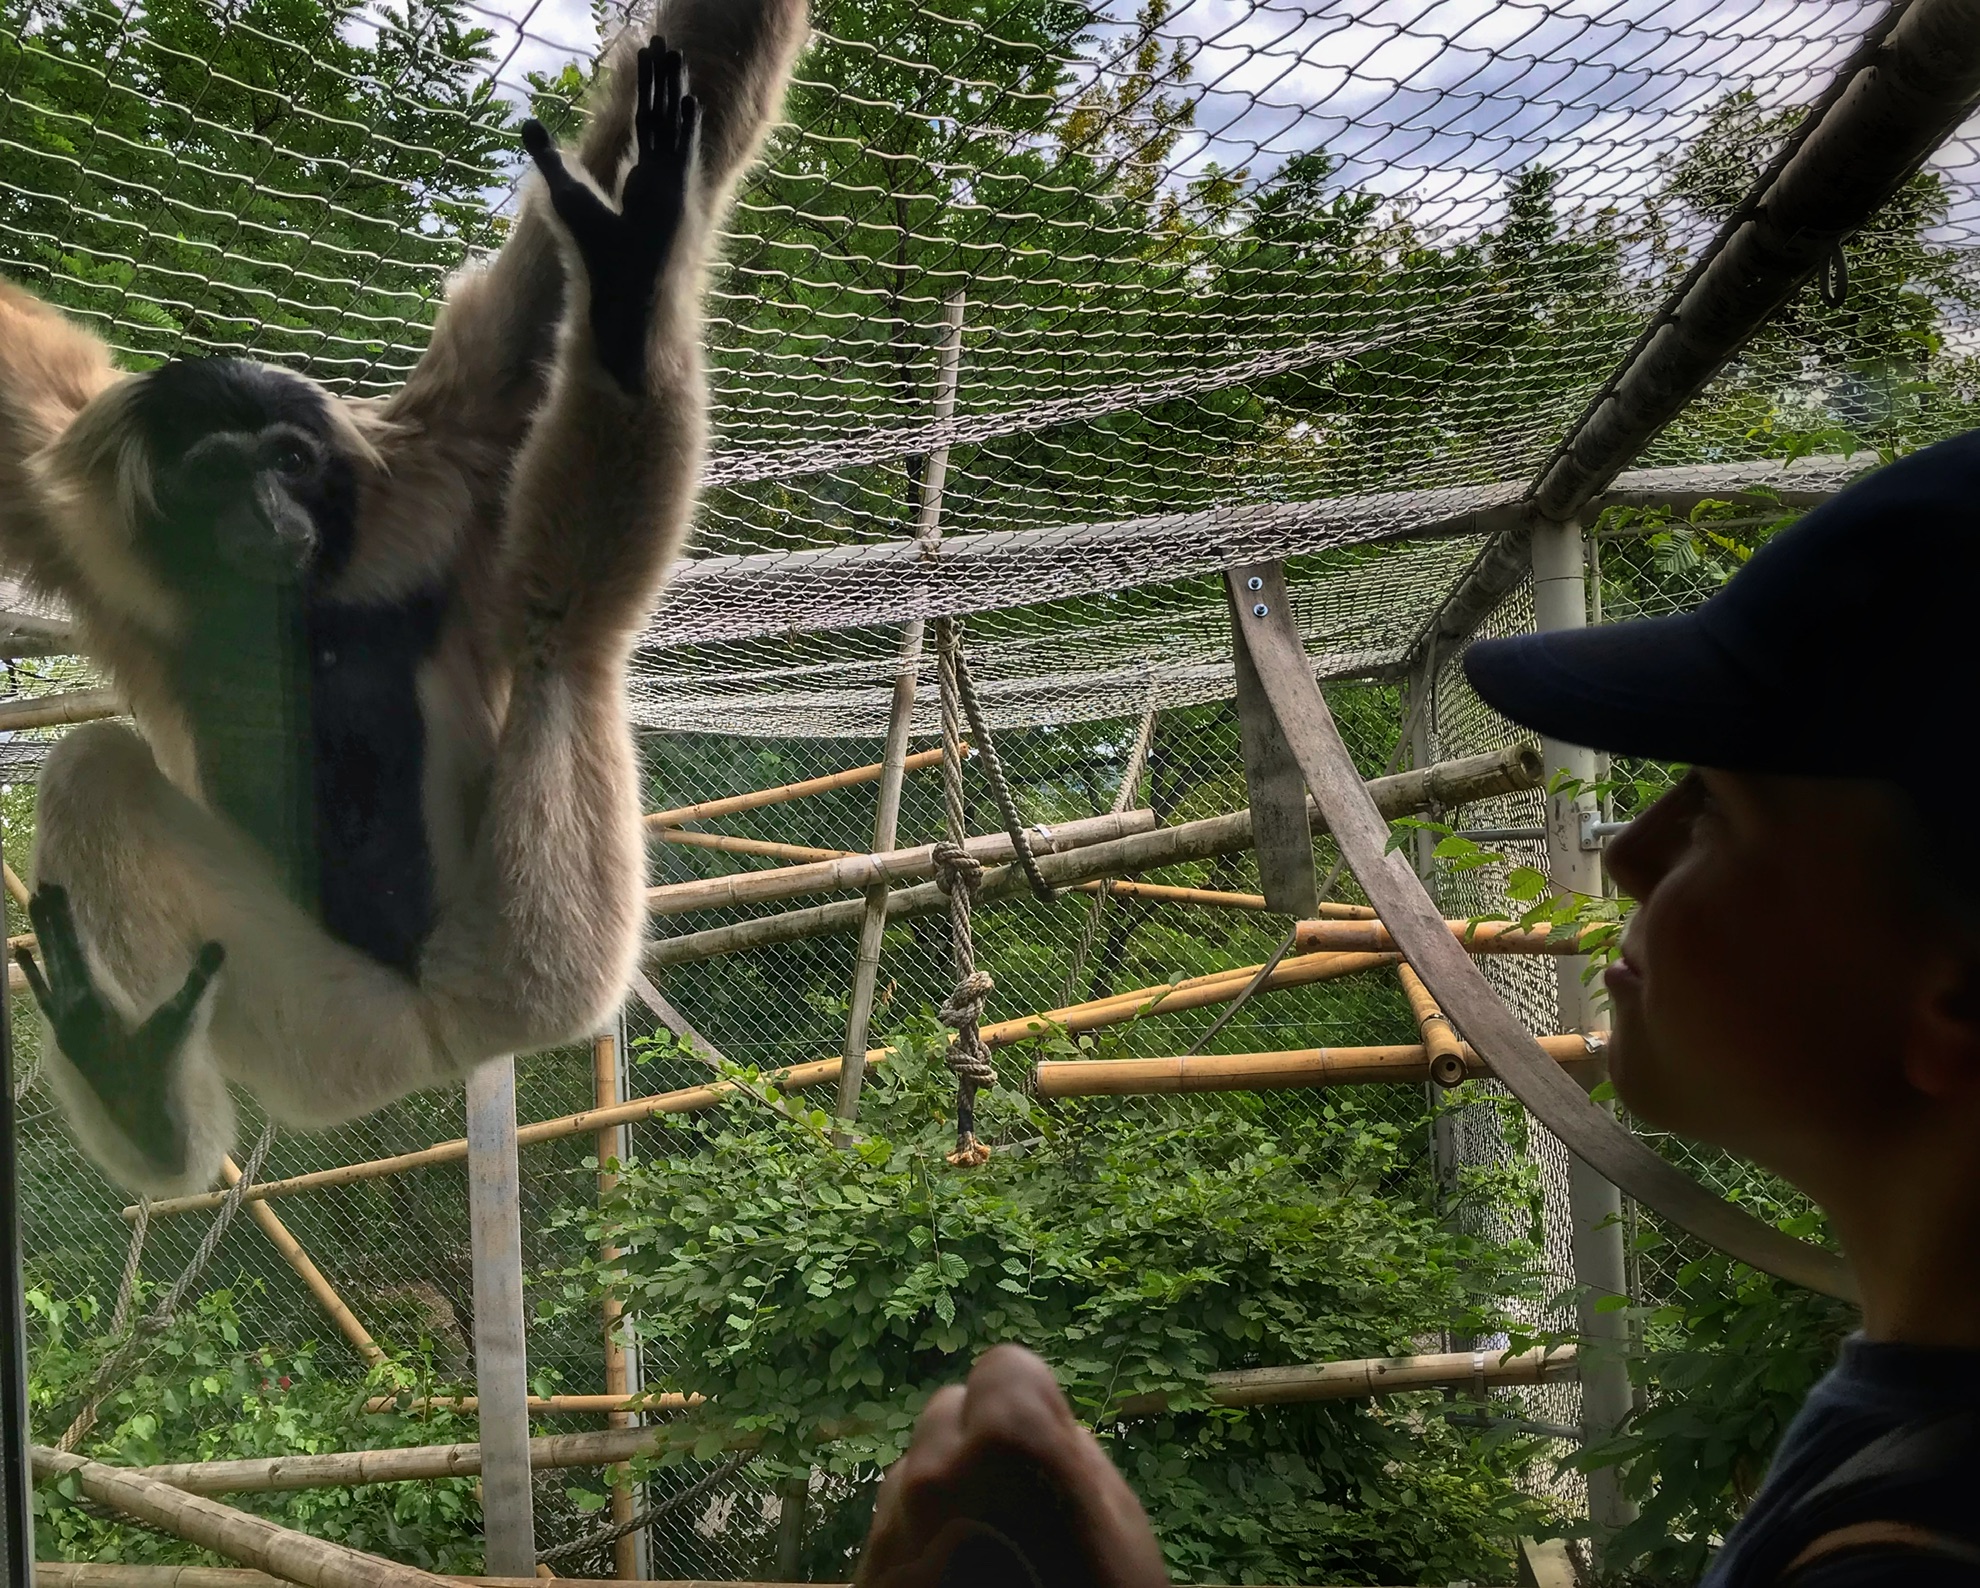 Zurich Zoo | Kto tutaj kogo oglÄ…da? ðŸ�’ | Â© Piotr Zagorowski 